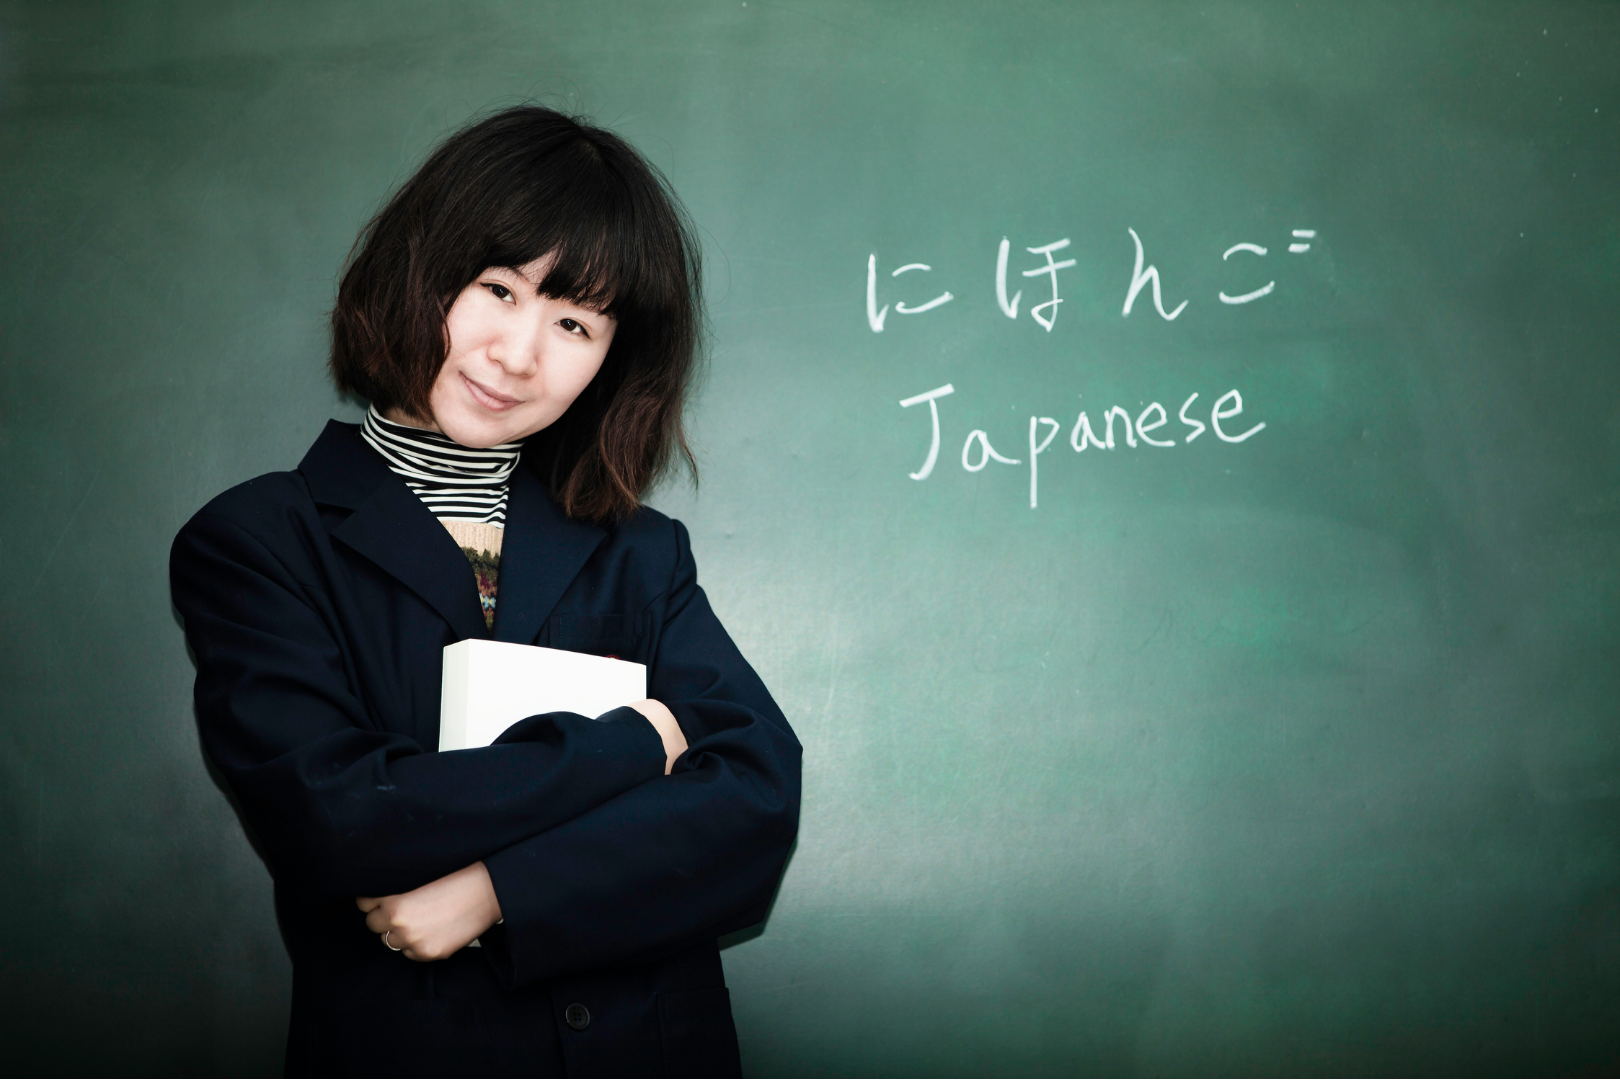 Eine Japanisch-Lehrerin steht vor einer Tafel